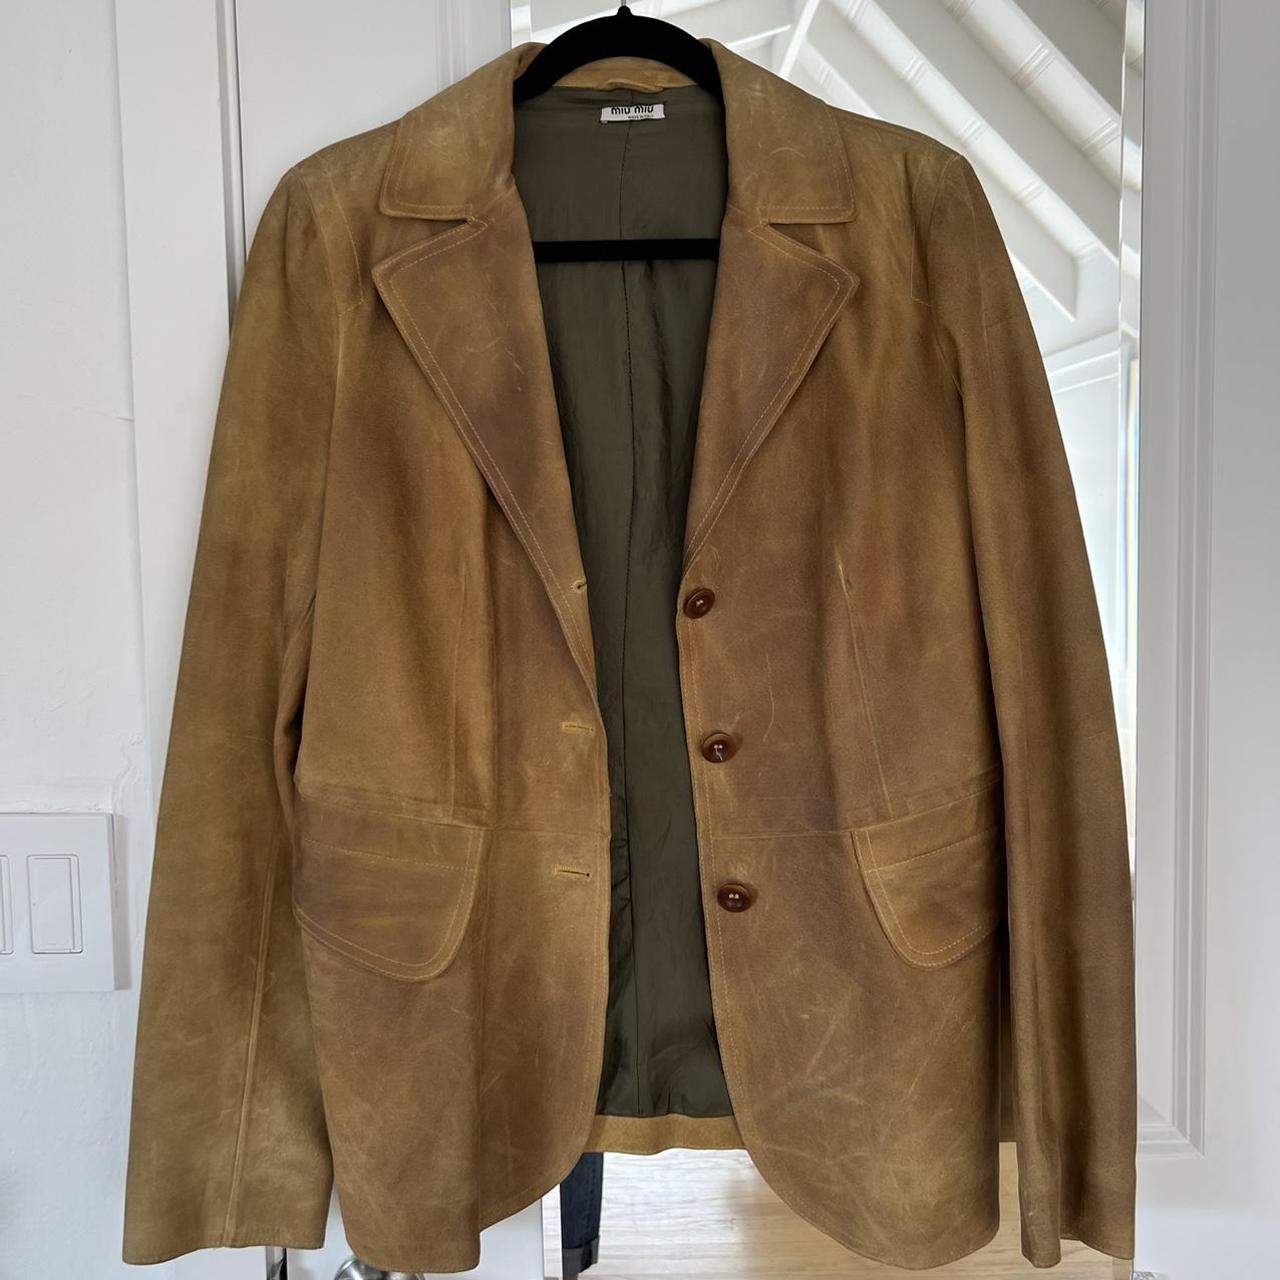 Early 2000s Miu Miu leather blazer, 100% real